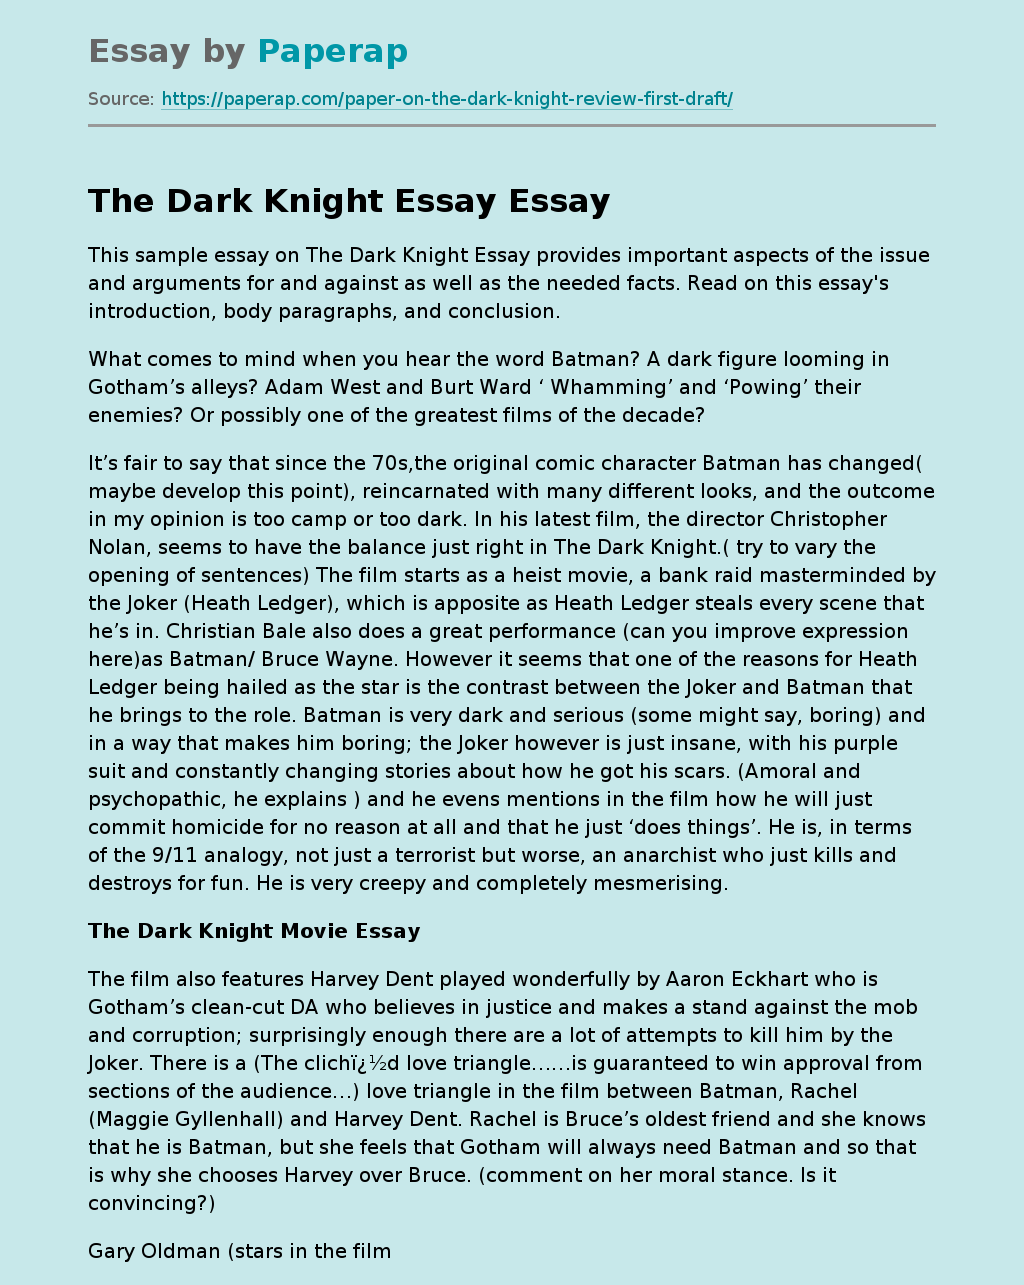 The Plot and Idea of the Dark Knight